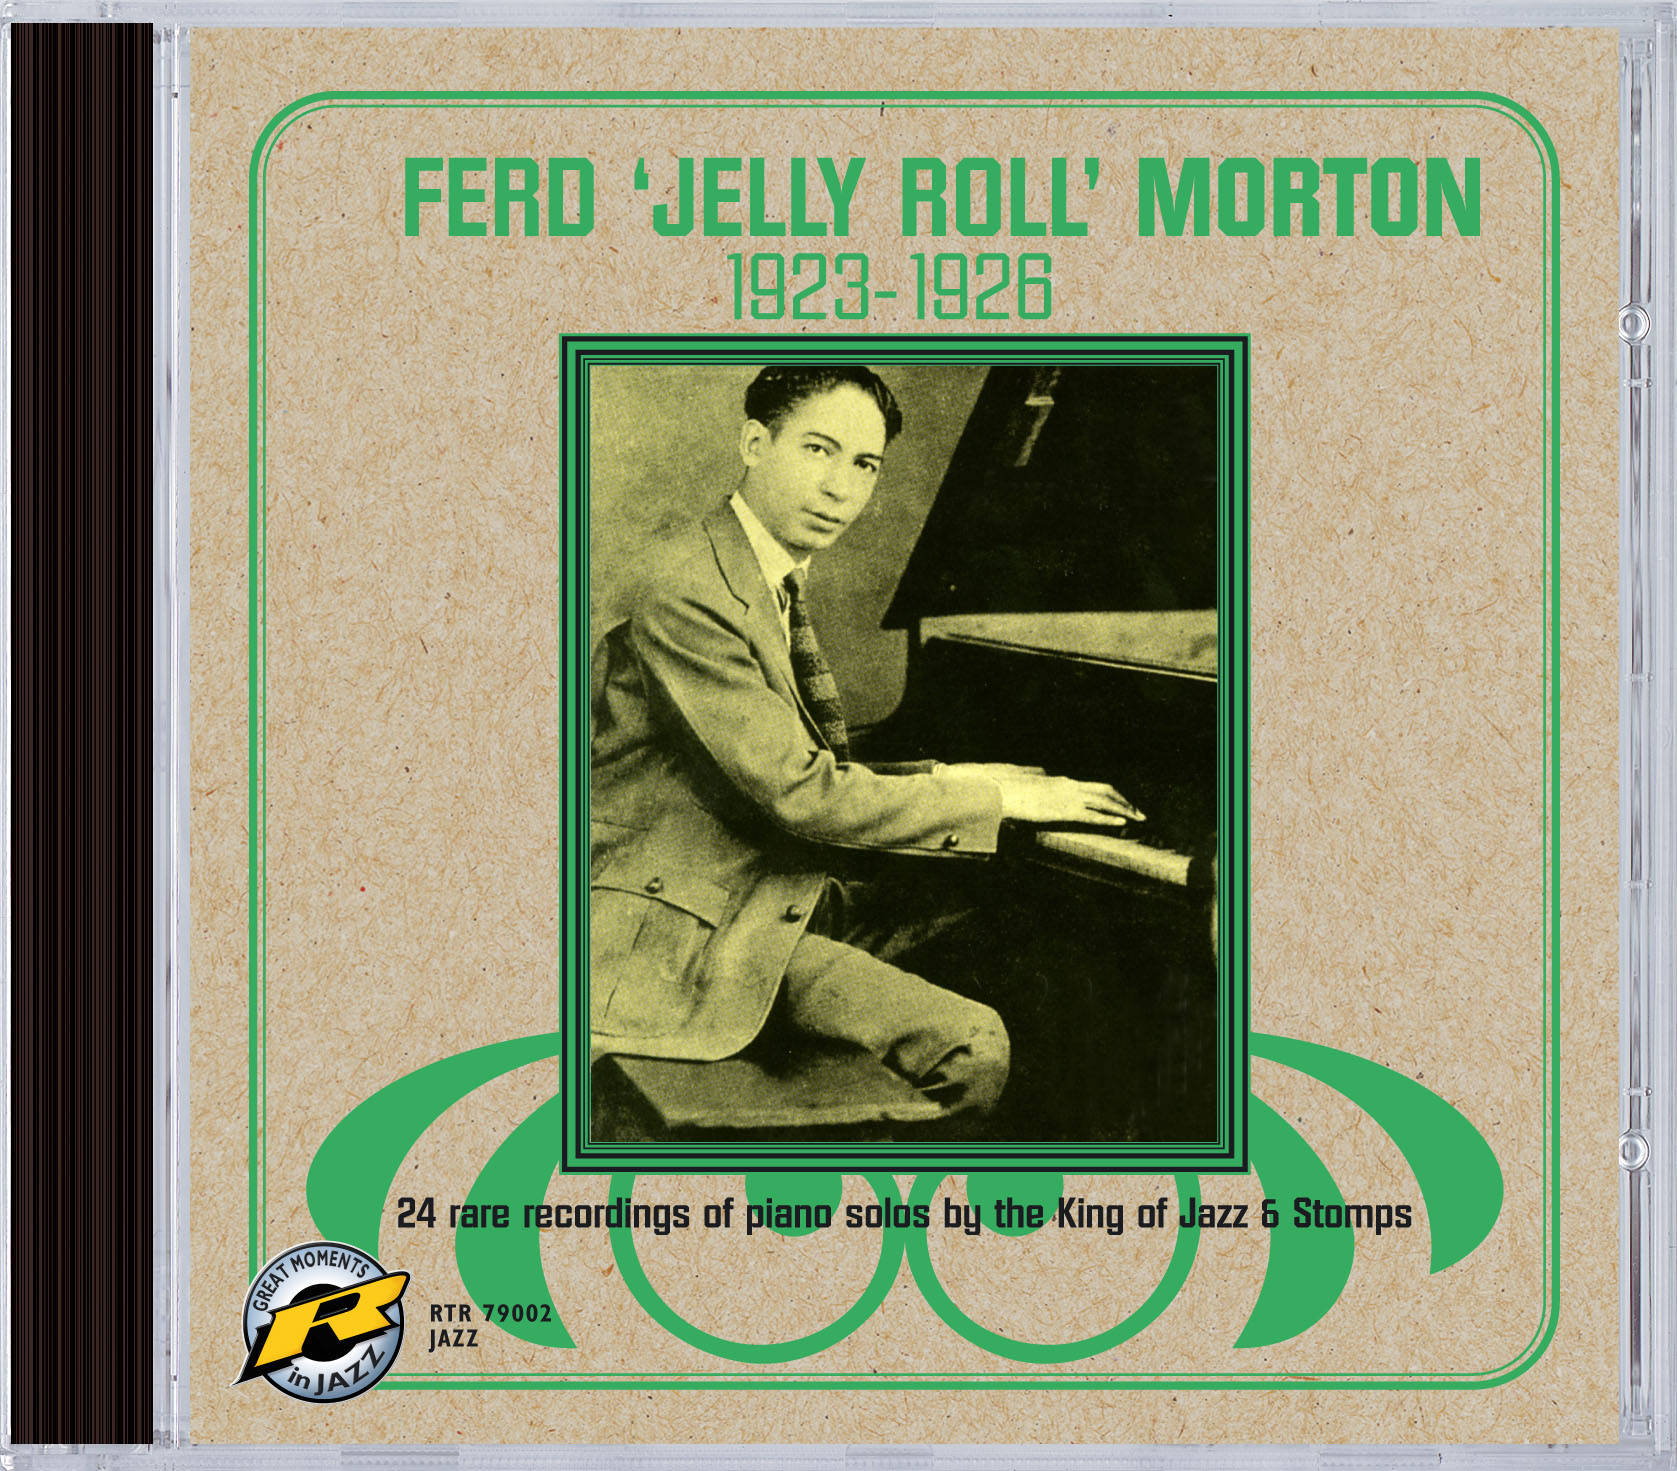 Jelly Roll Morton 1677 X 1471 Wallpaper